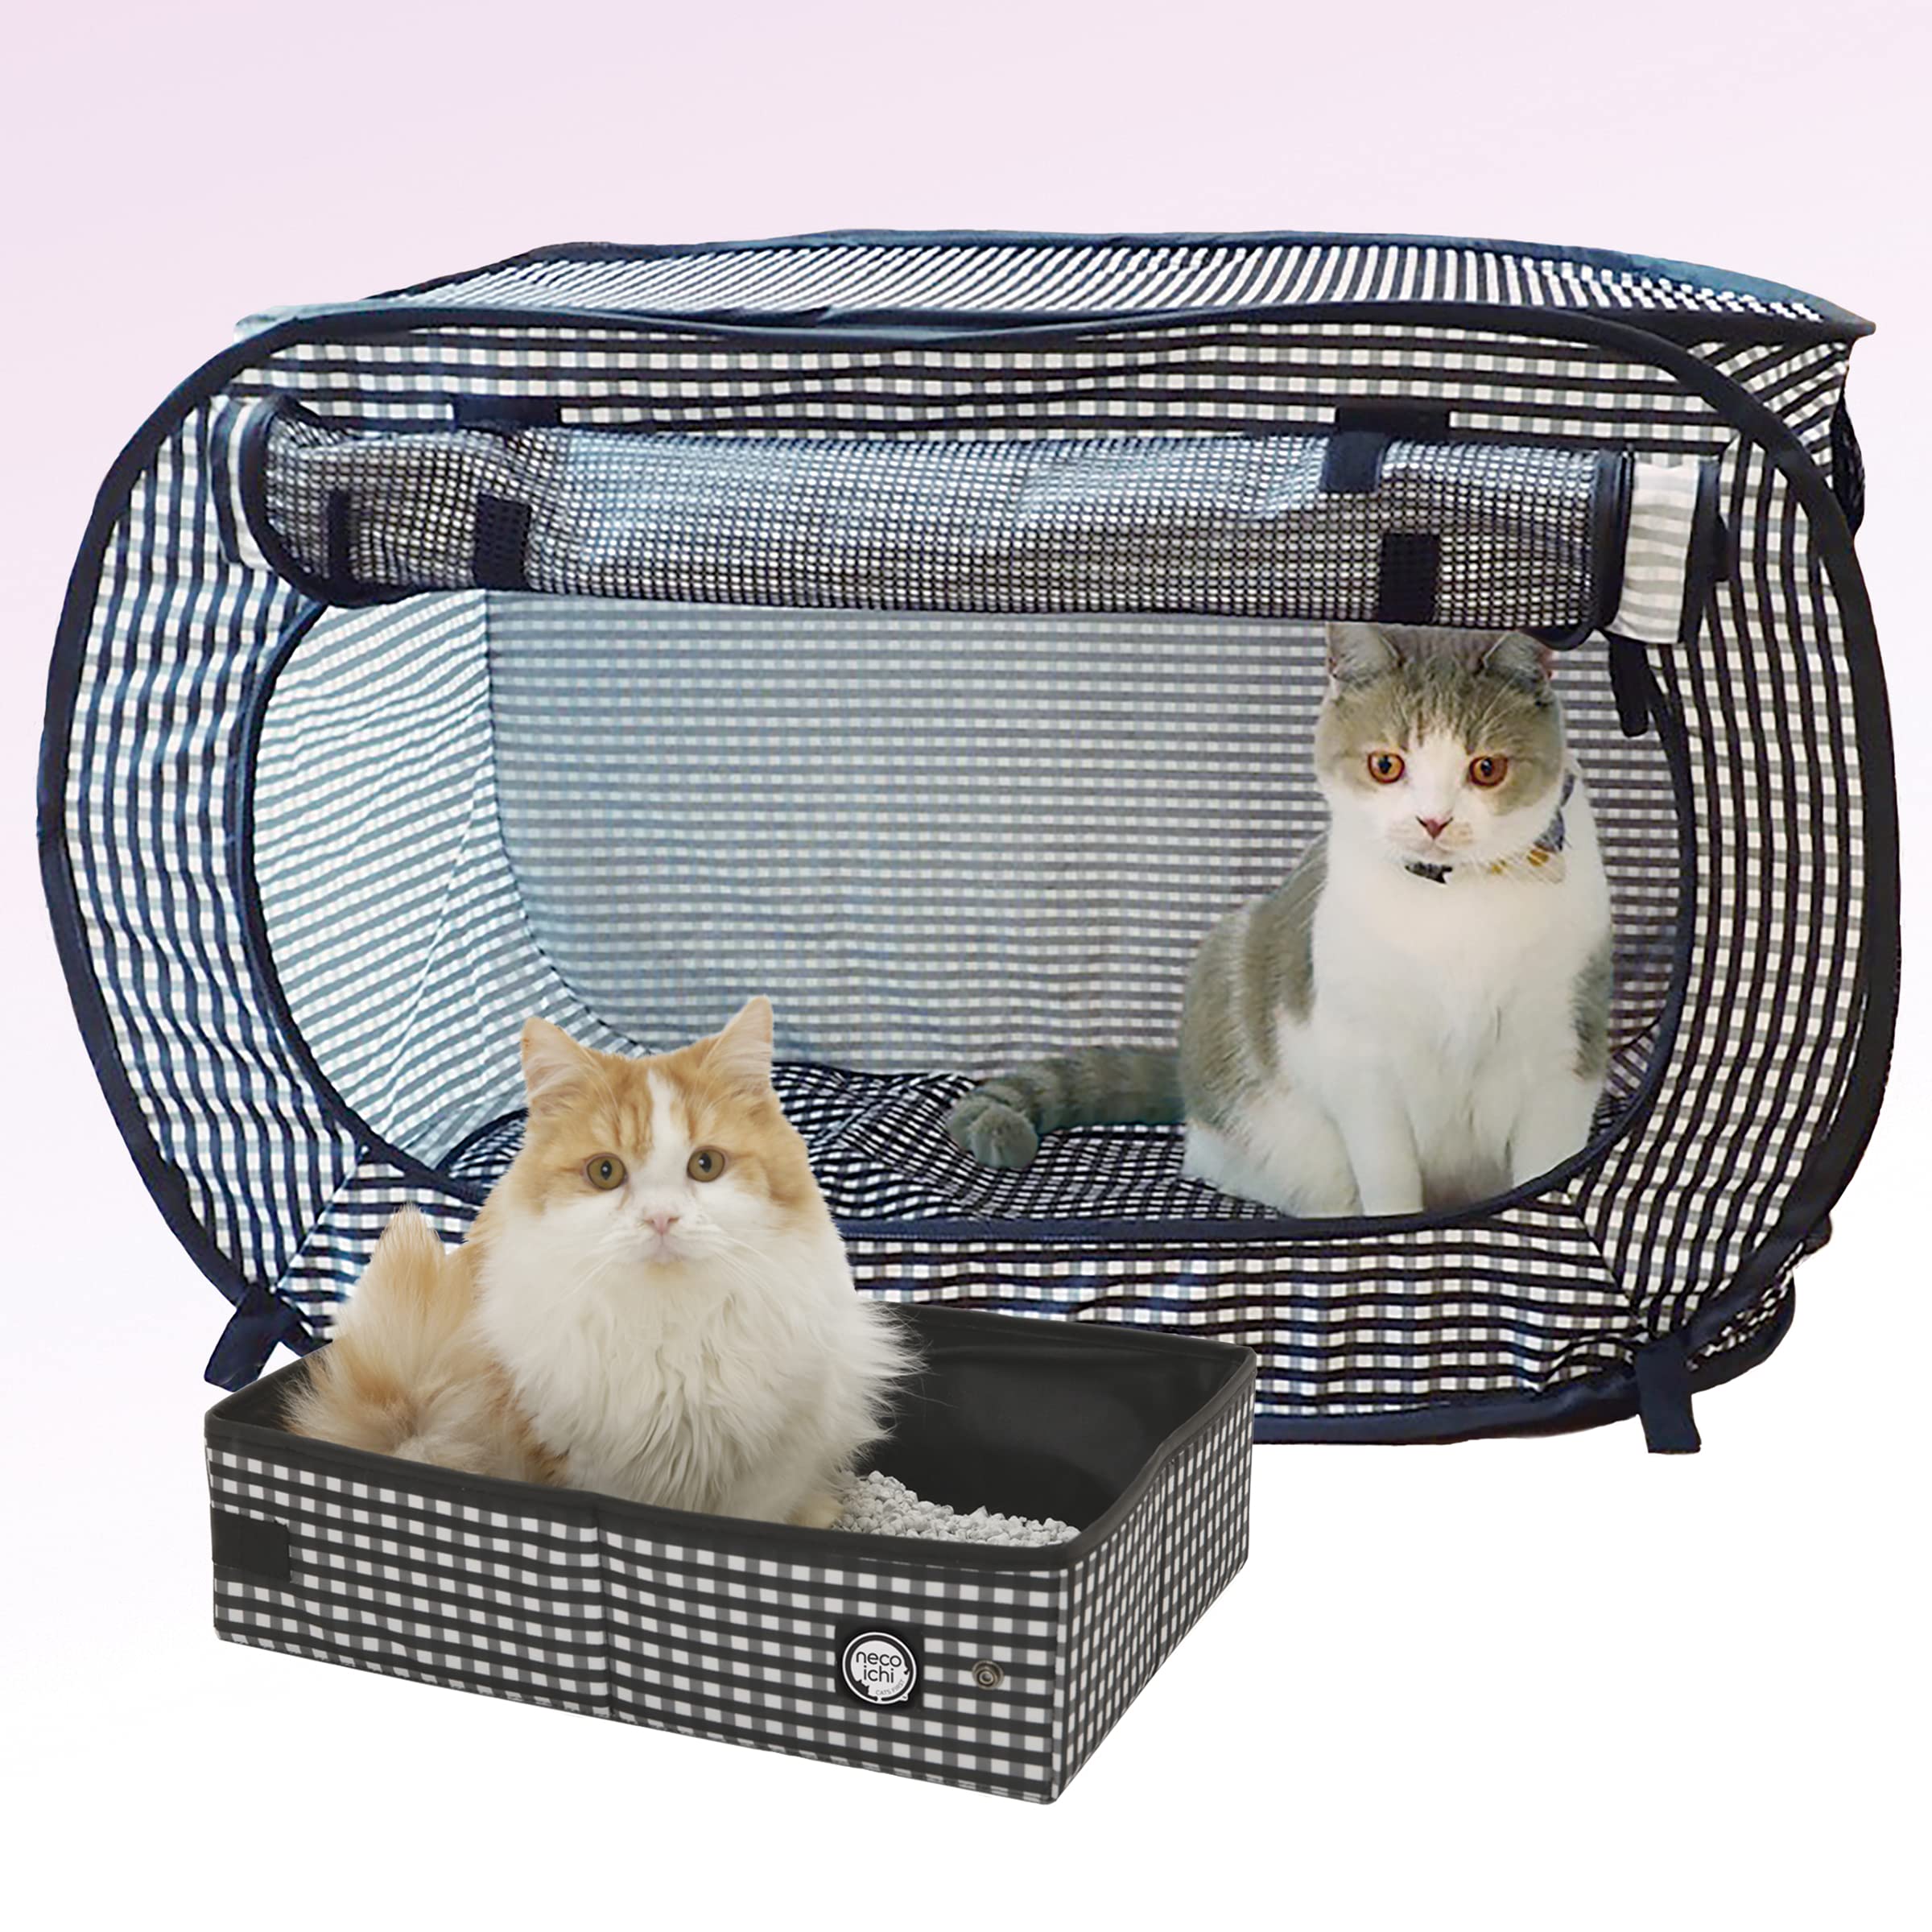 Necoichi Stressfreier Katzenkäfig (Tragetasche) Katzentoiletten-Set, zusammenklappbar, für 2 Katzen, 80,8 cm L x 11,4 cm B x 50,8 cm H, für Indoor-Katzen, kleine, mittelgroße und große Katzen